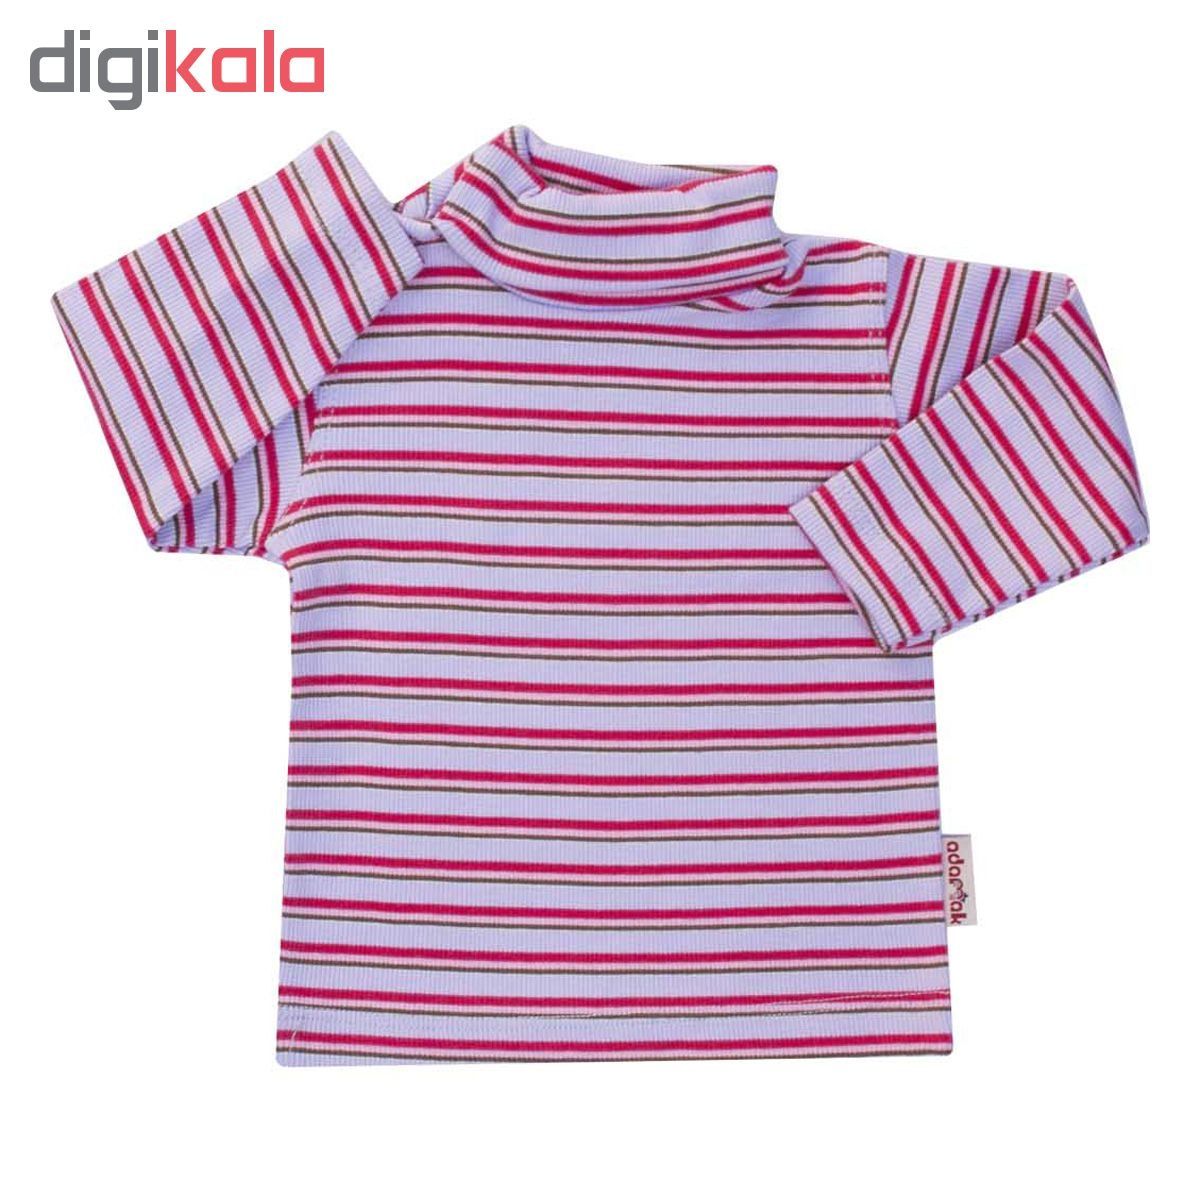 تی شرت آستین بلند نوزاد آدمک طرح راه راه کد 01-144401 -  - 2